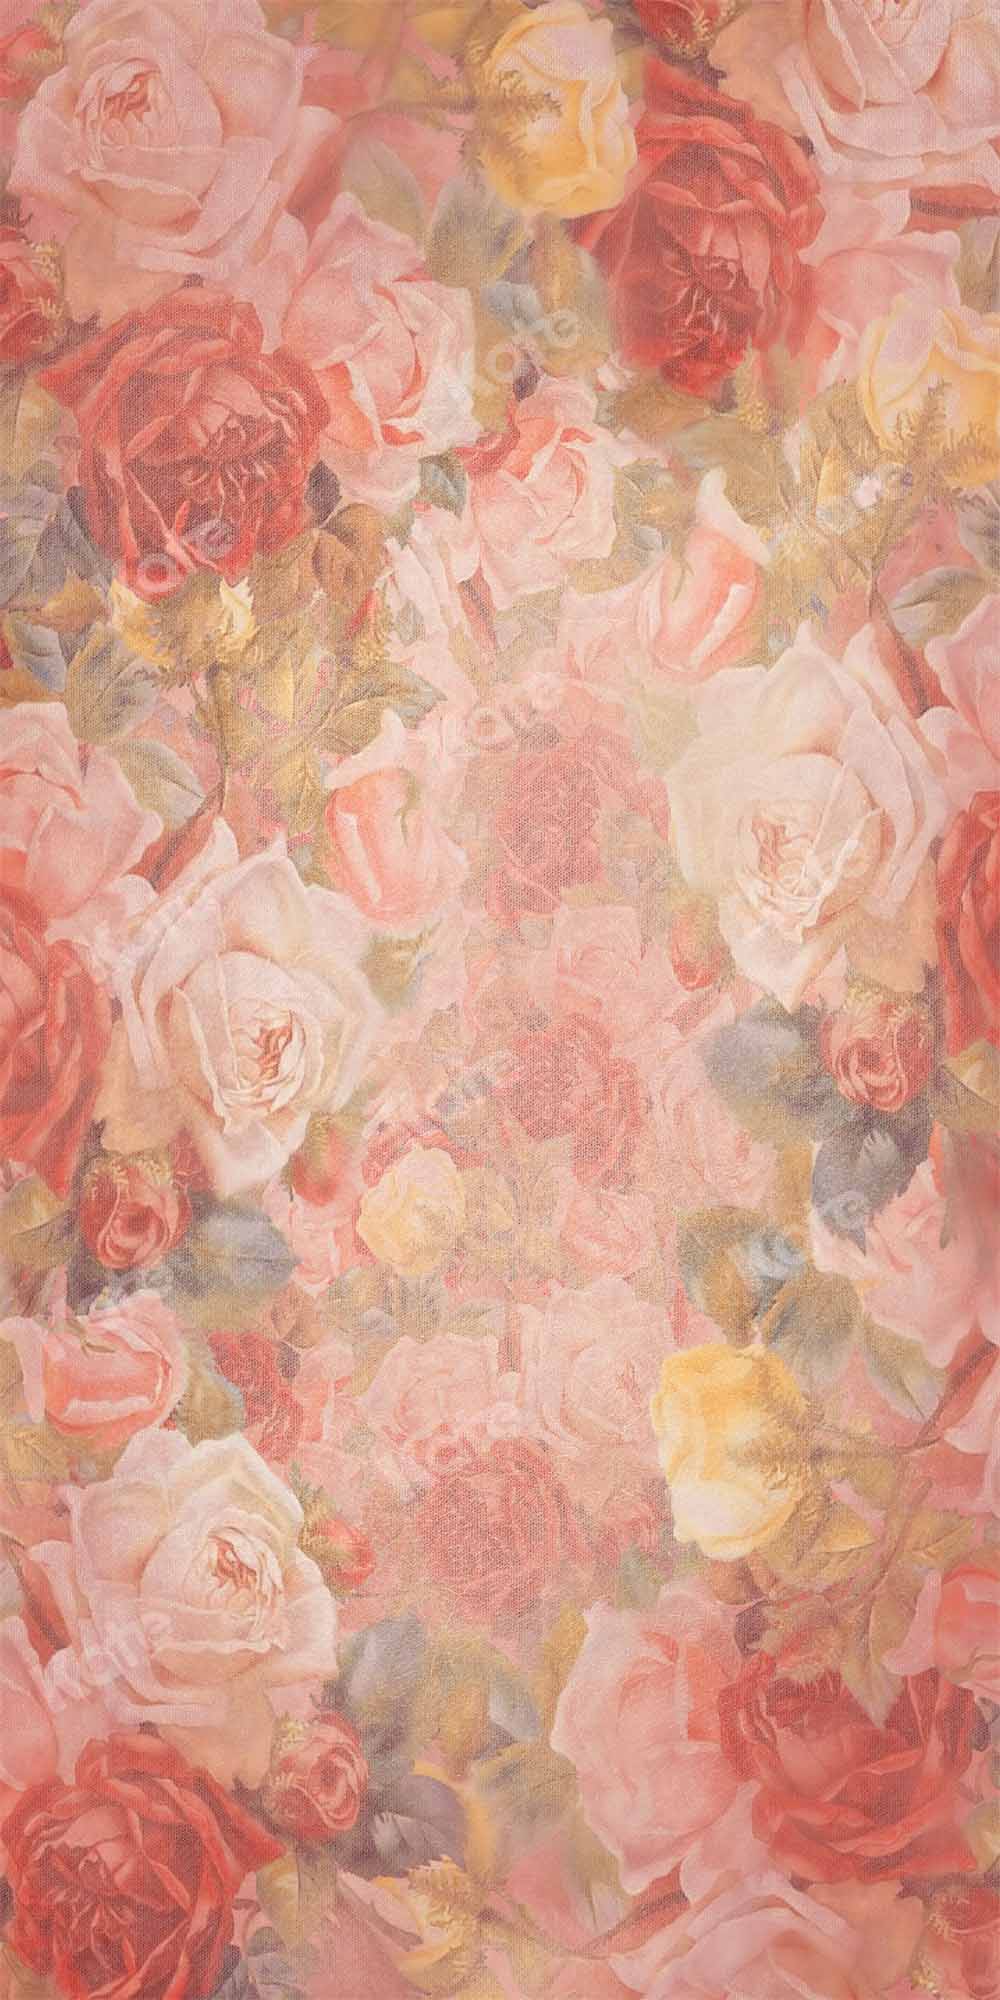 Super Sale-A Kate Valentinstag Textur Hintergrund Geburtstag Blumen von GQ